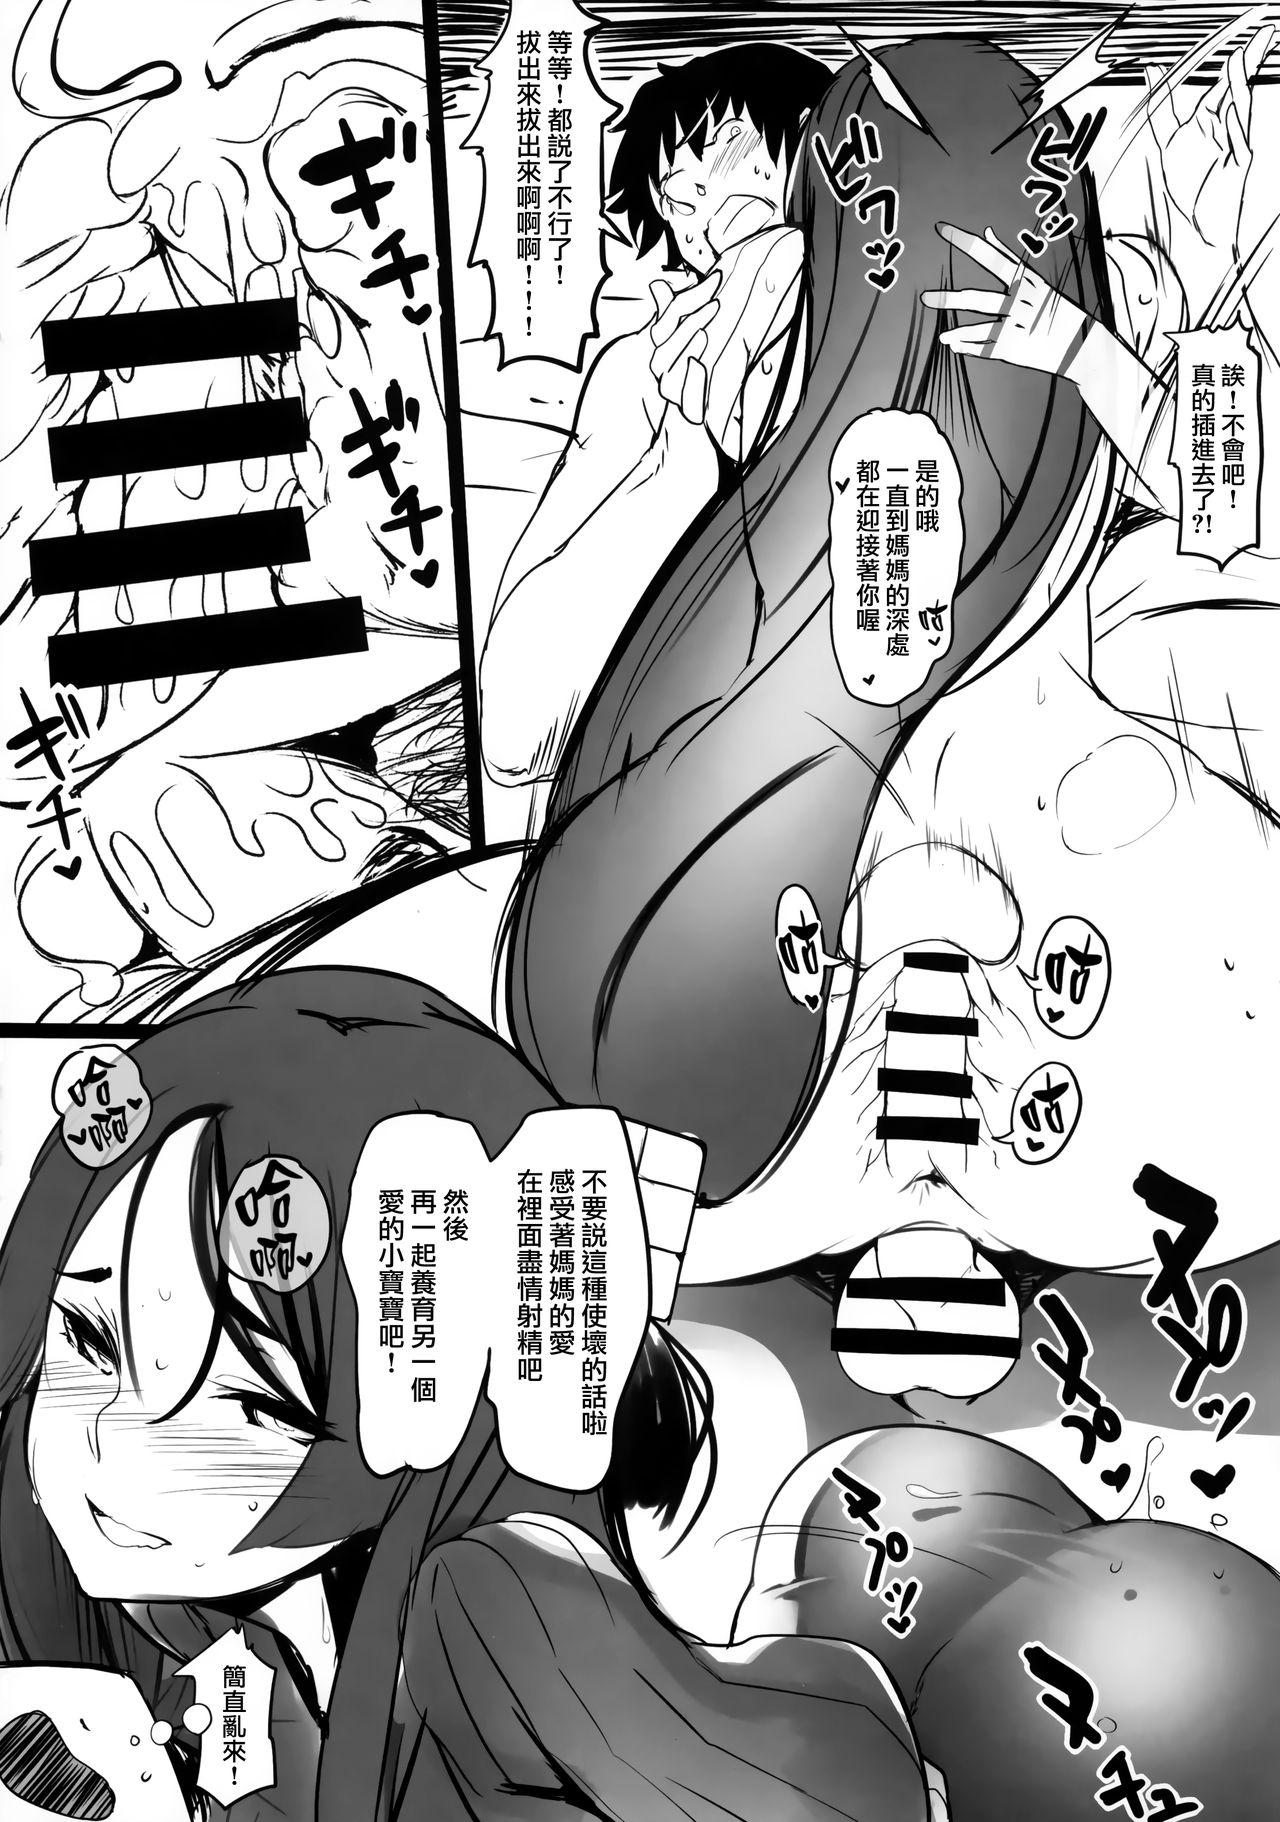 Amature Oya no Kokoro Ko Shirazu - Fate grand order Teenporno - Page 6